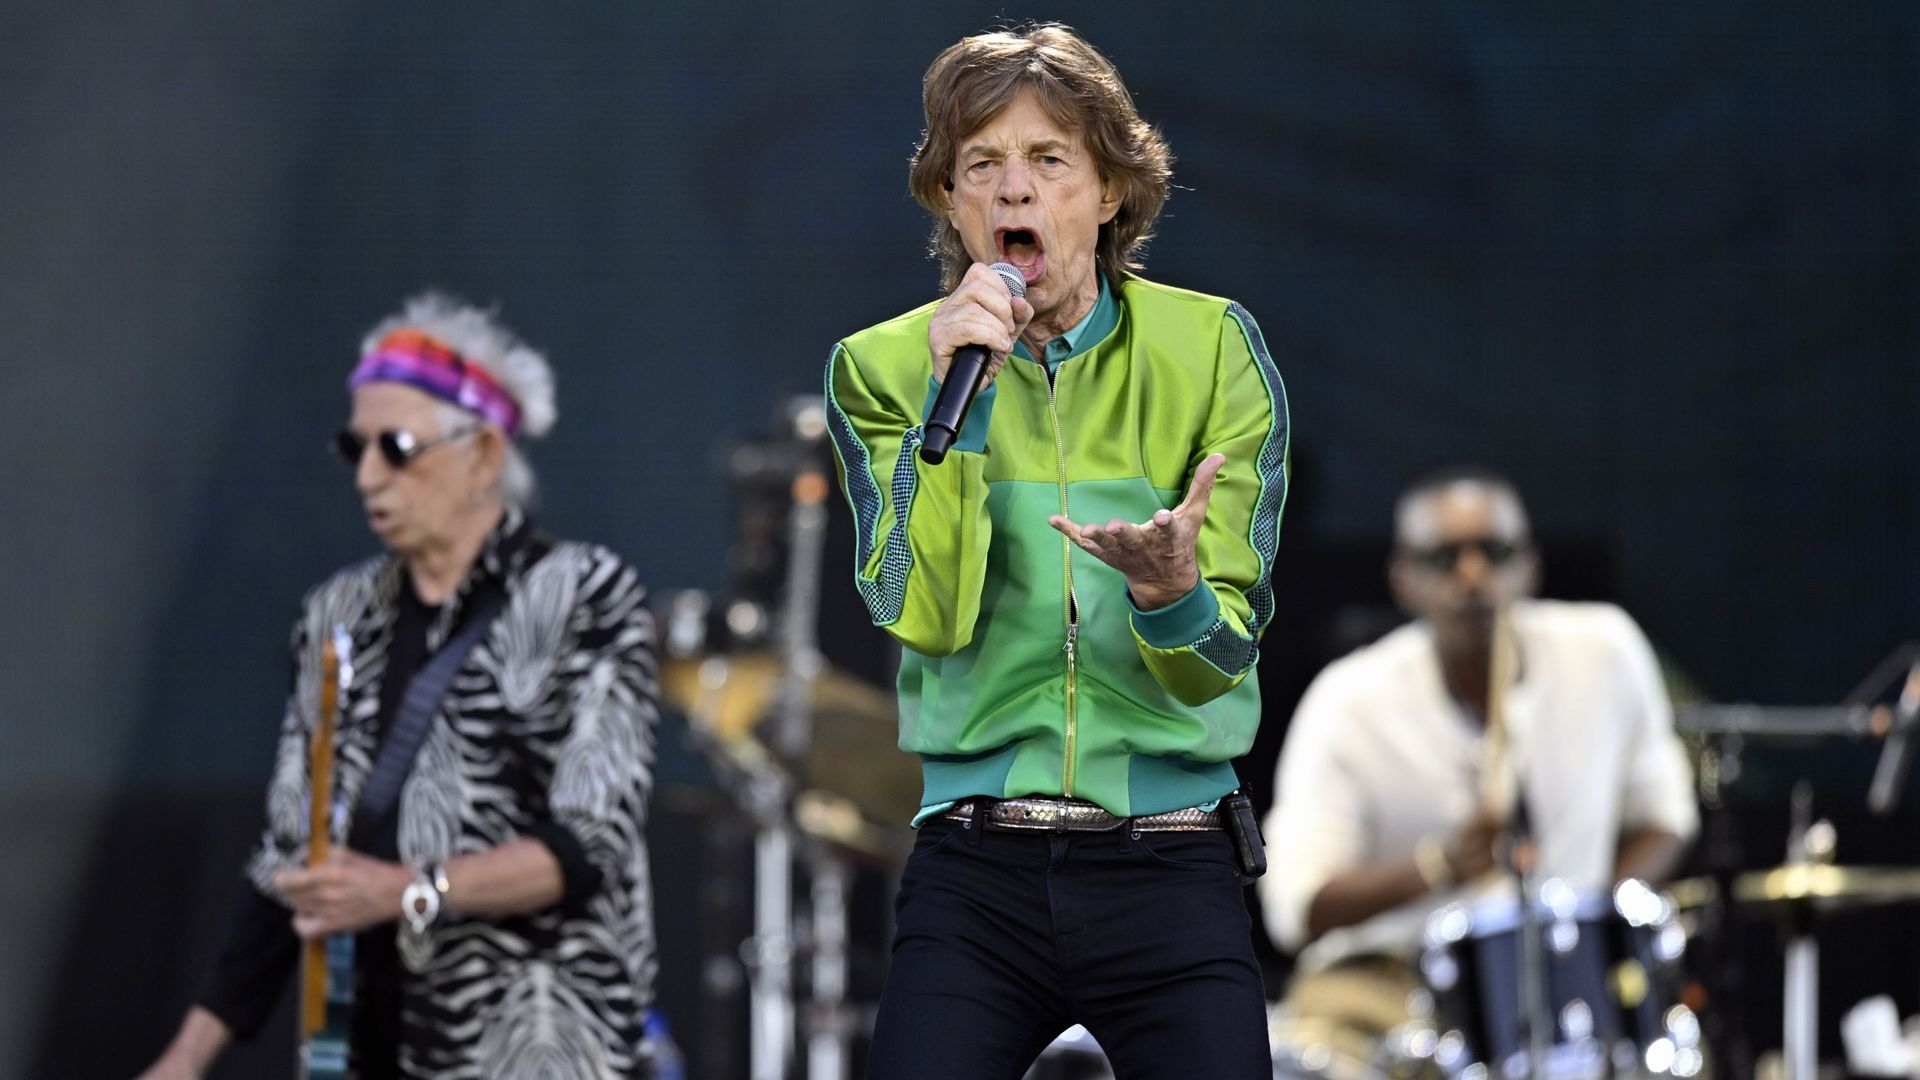 Mick Jagger, chanteur des Rolling Stones, lors de la tournée "Stones Sixty Europe 2022", au Stade Roi Baudouin, à Bruxelles, le lundi 11 juillet 2022.